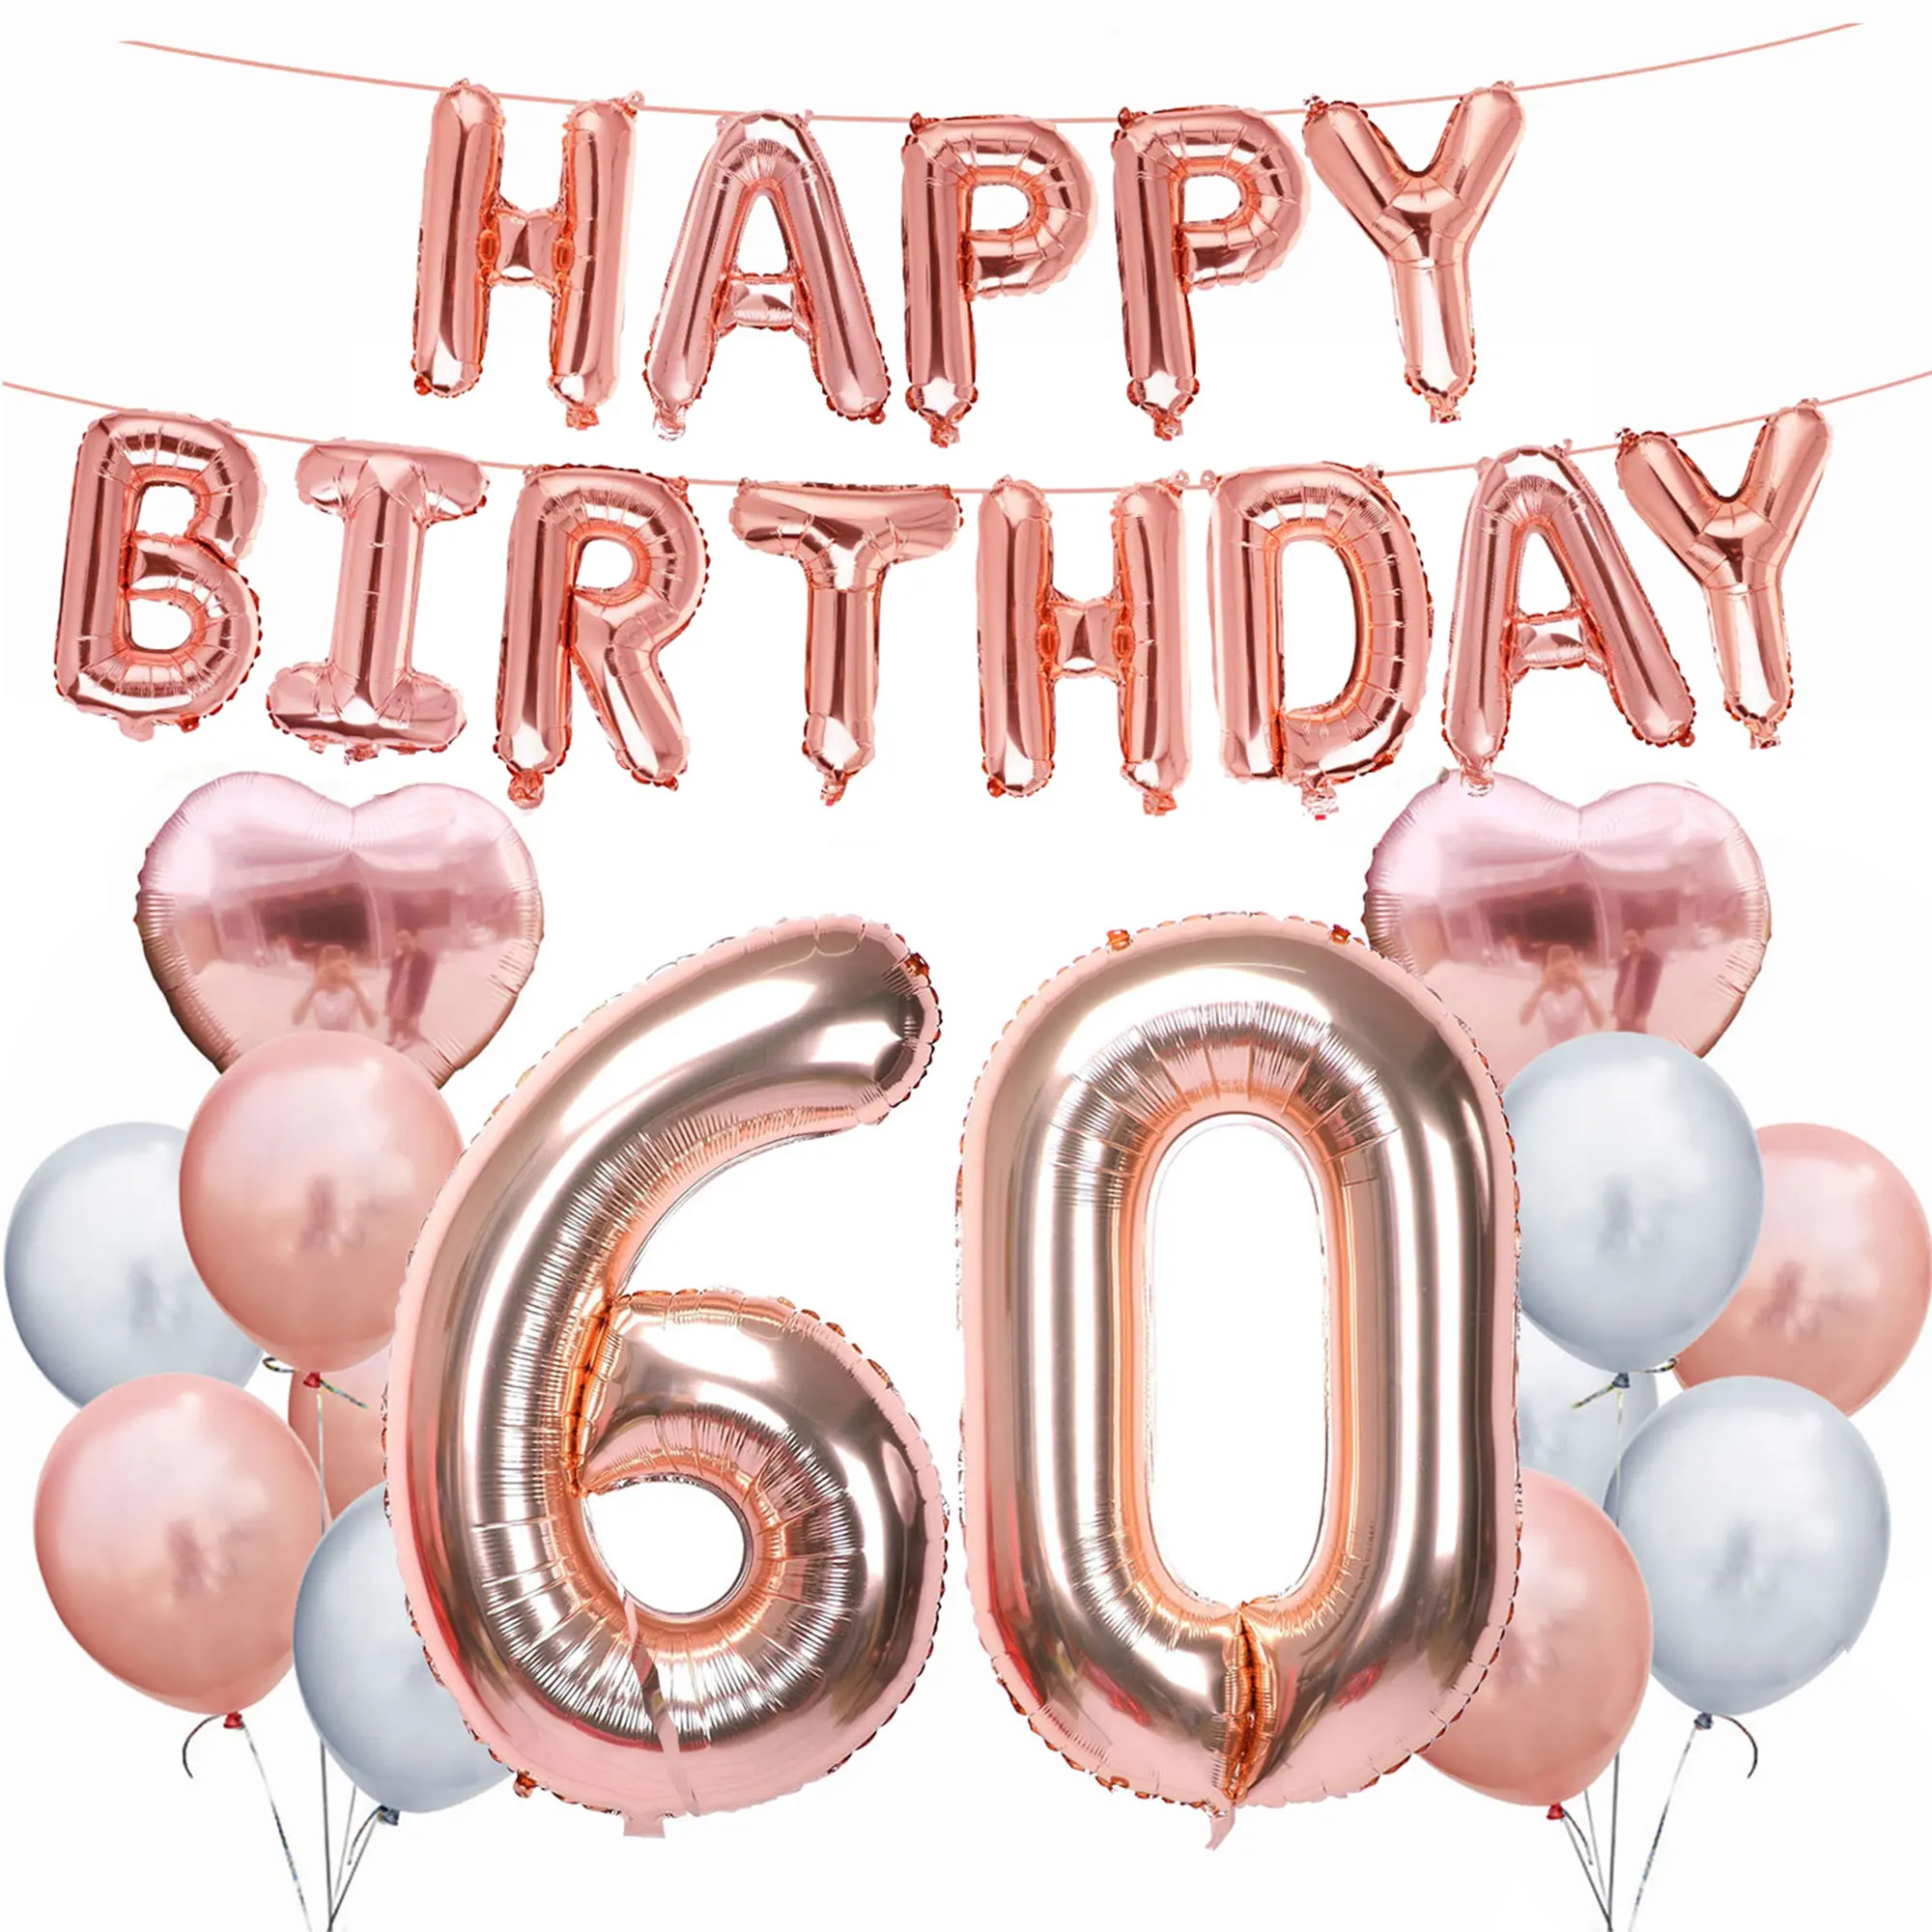 ZLJQ 30, 40, 50, 60, 70, 80 лет, товары для дня рождения, для вечеринок, розовое золото, с днем рождения, фольгированный шар, для взрослых, для дня рождения, украшения, балон - Цвет: No.4